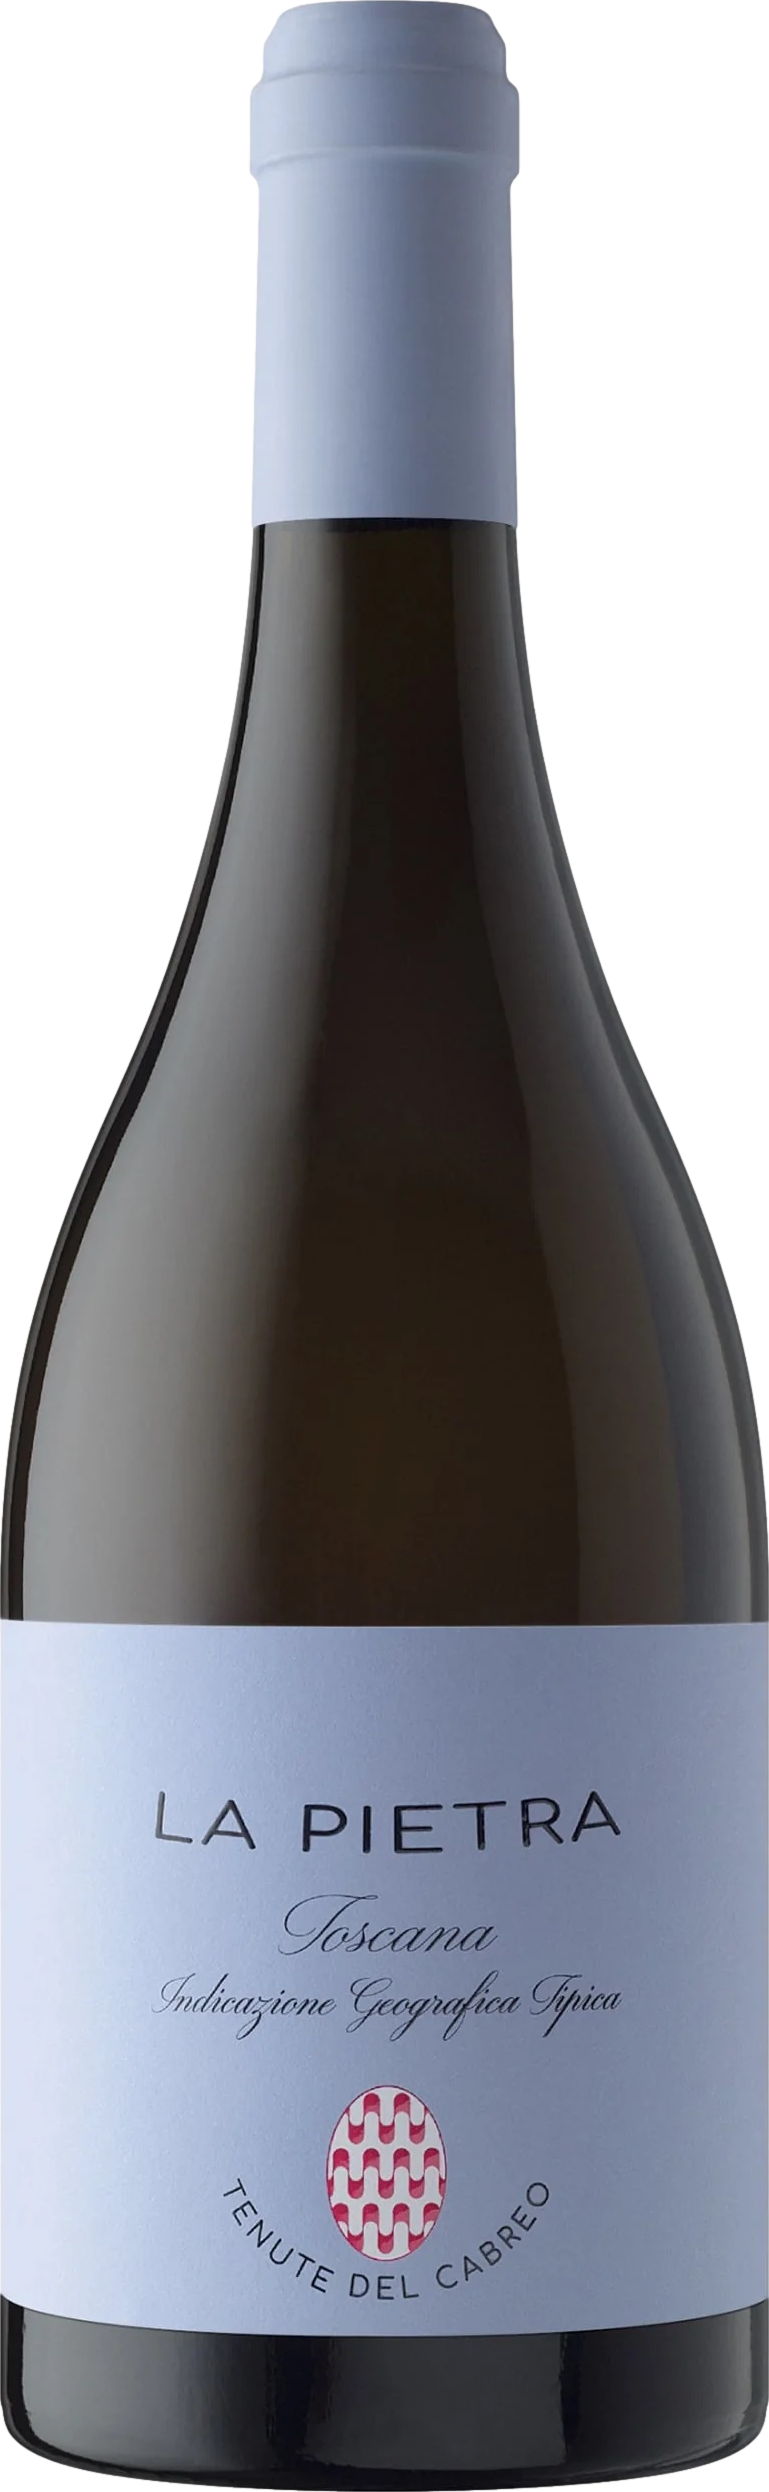 Tenute del Cabreo La Pietra Chardonnay 2020 Folonari 8wines DACH